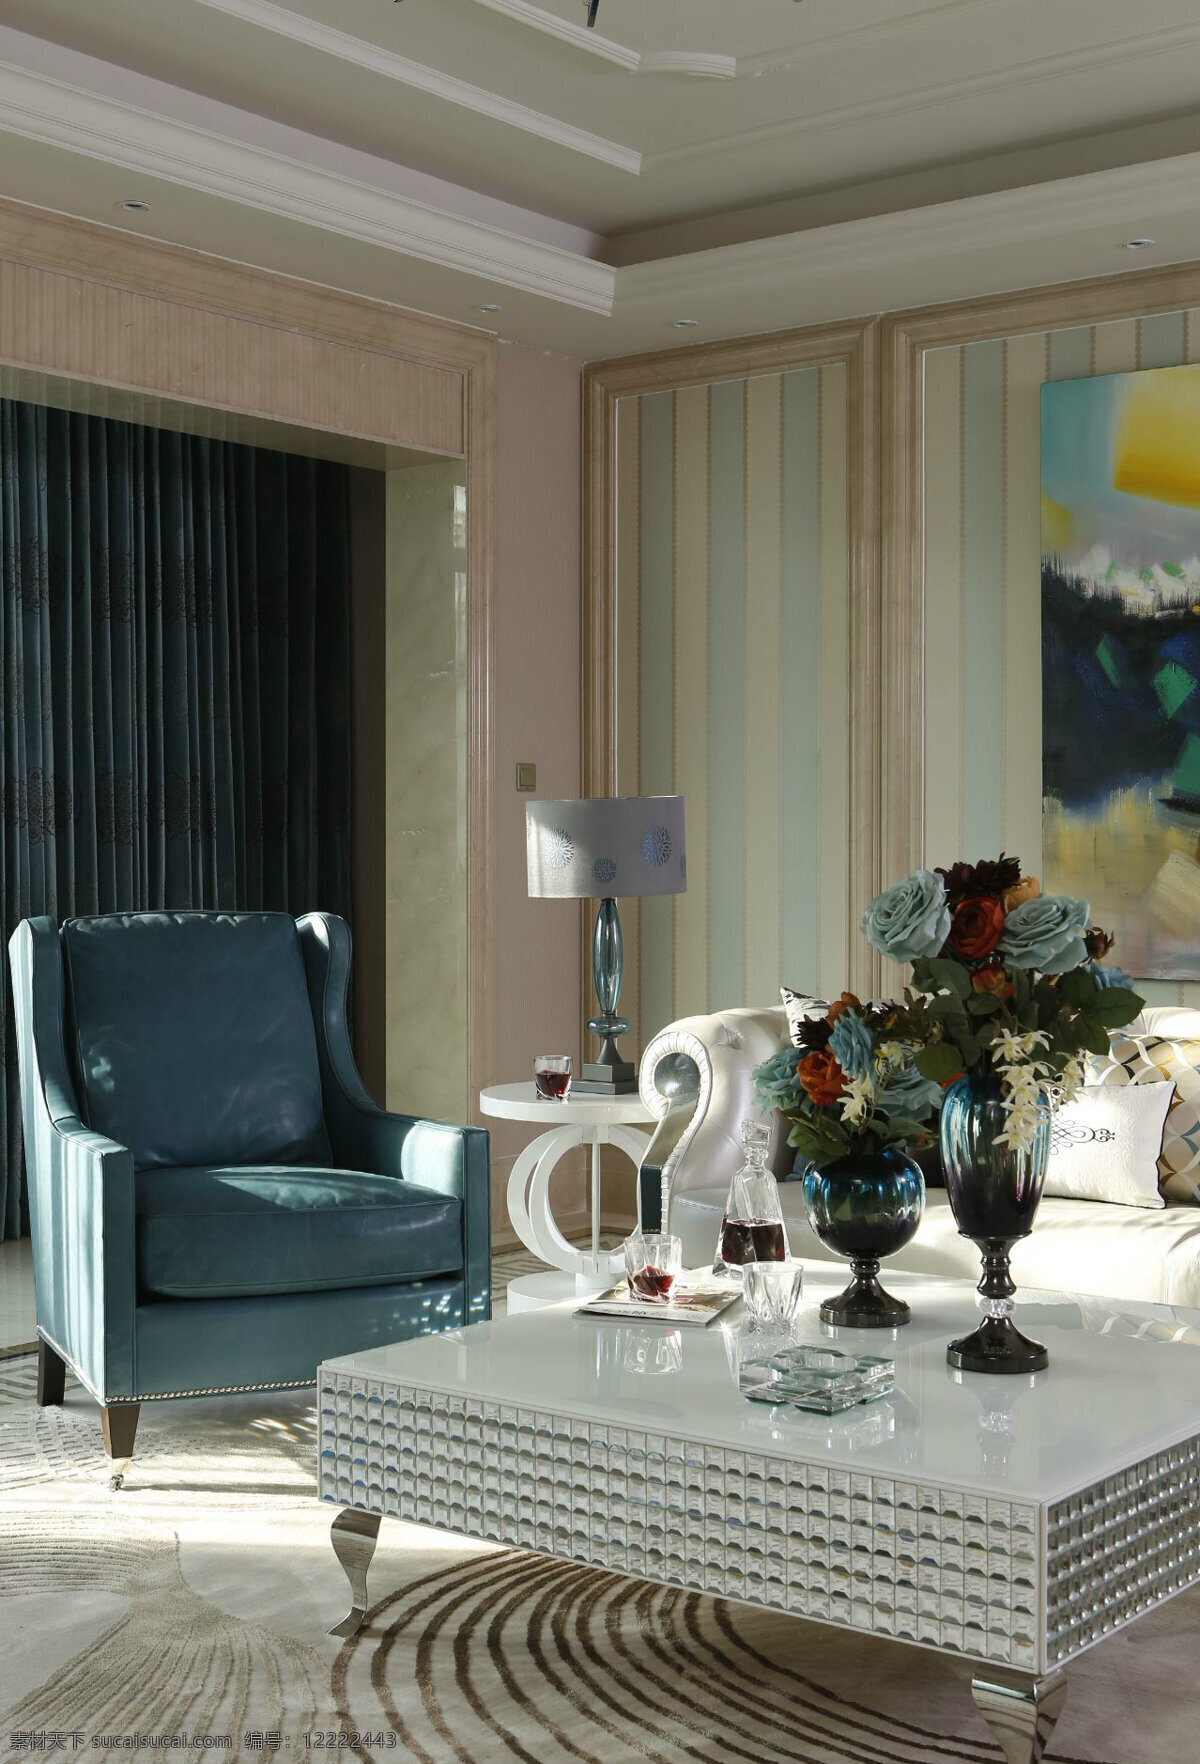 欧式 客厅 蓝灰色 单人 沙发 室内装修 效果图 客厅装修 单人沙发 白色茶几 蓝灰色窗帘